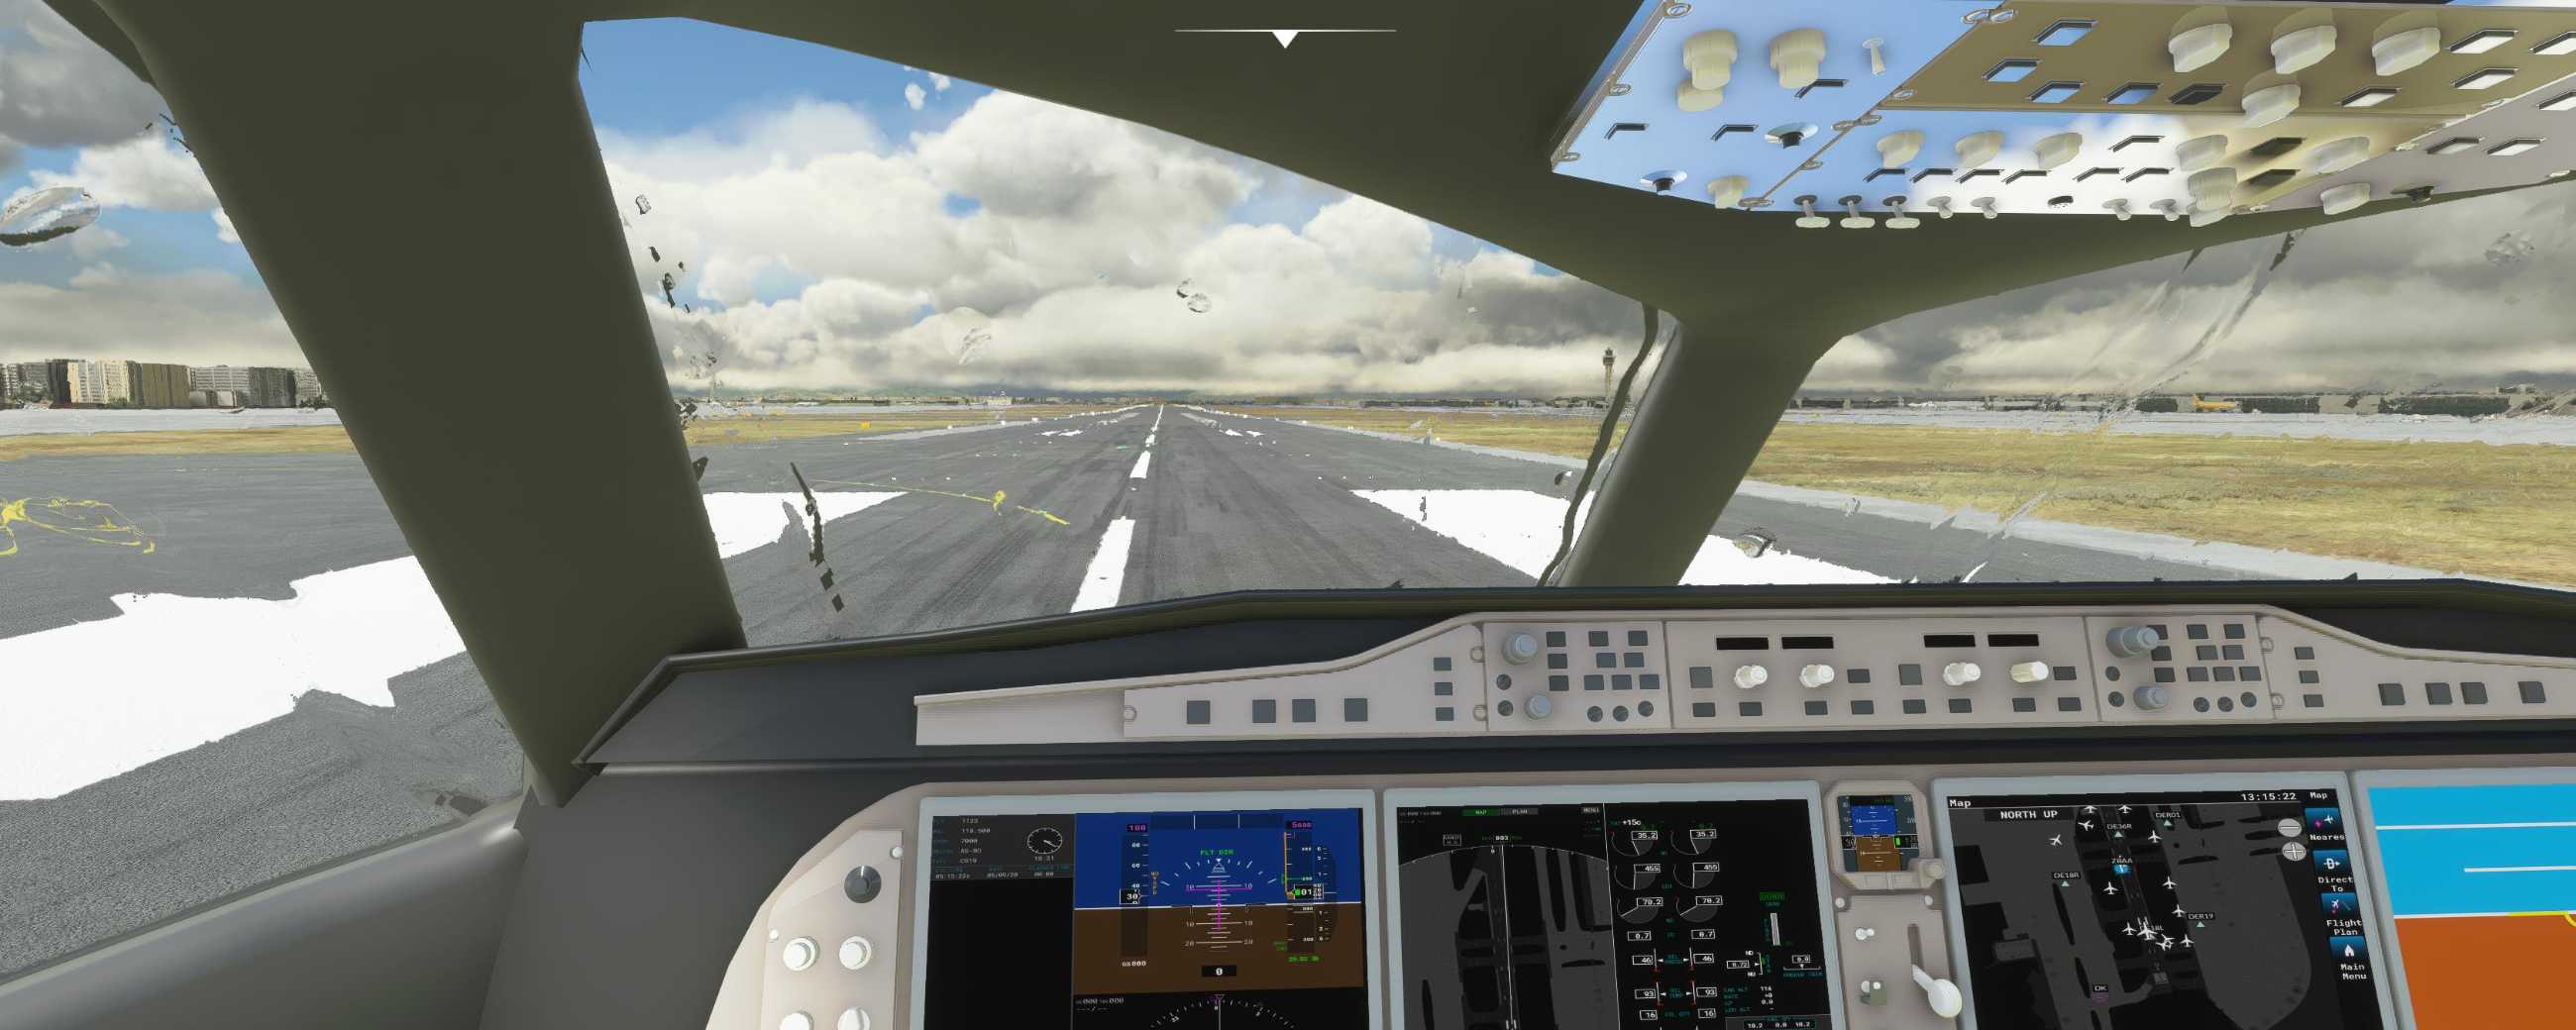 FYCYC-C919 国产大飞机机模 微软模拟飞行演示-8920 